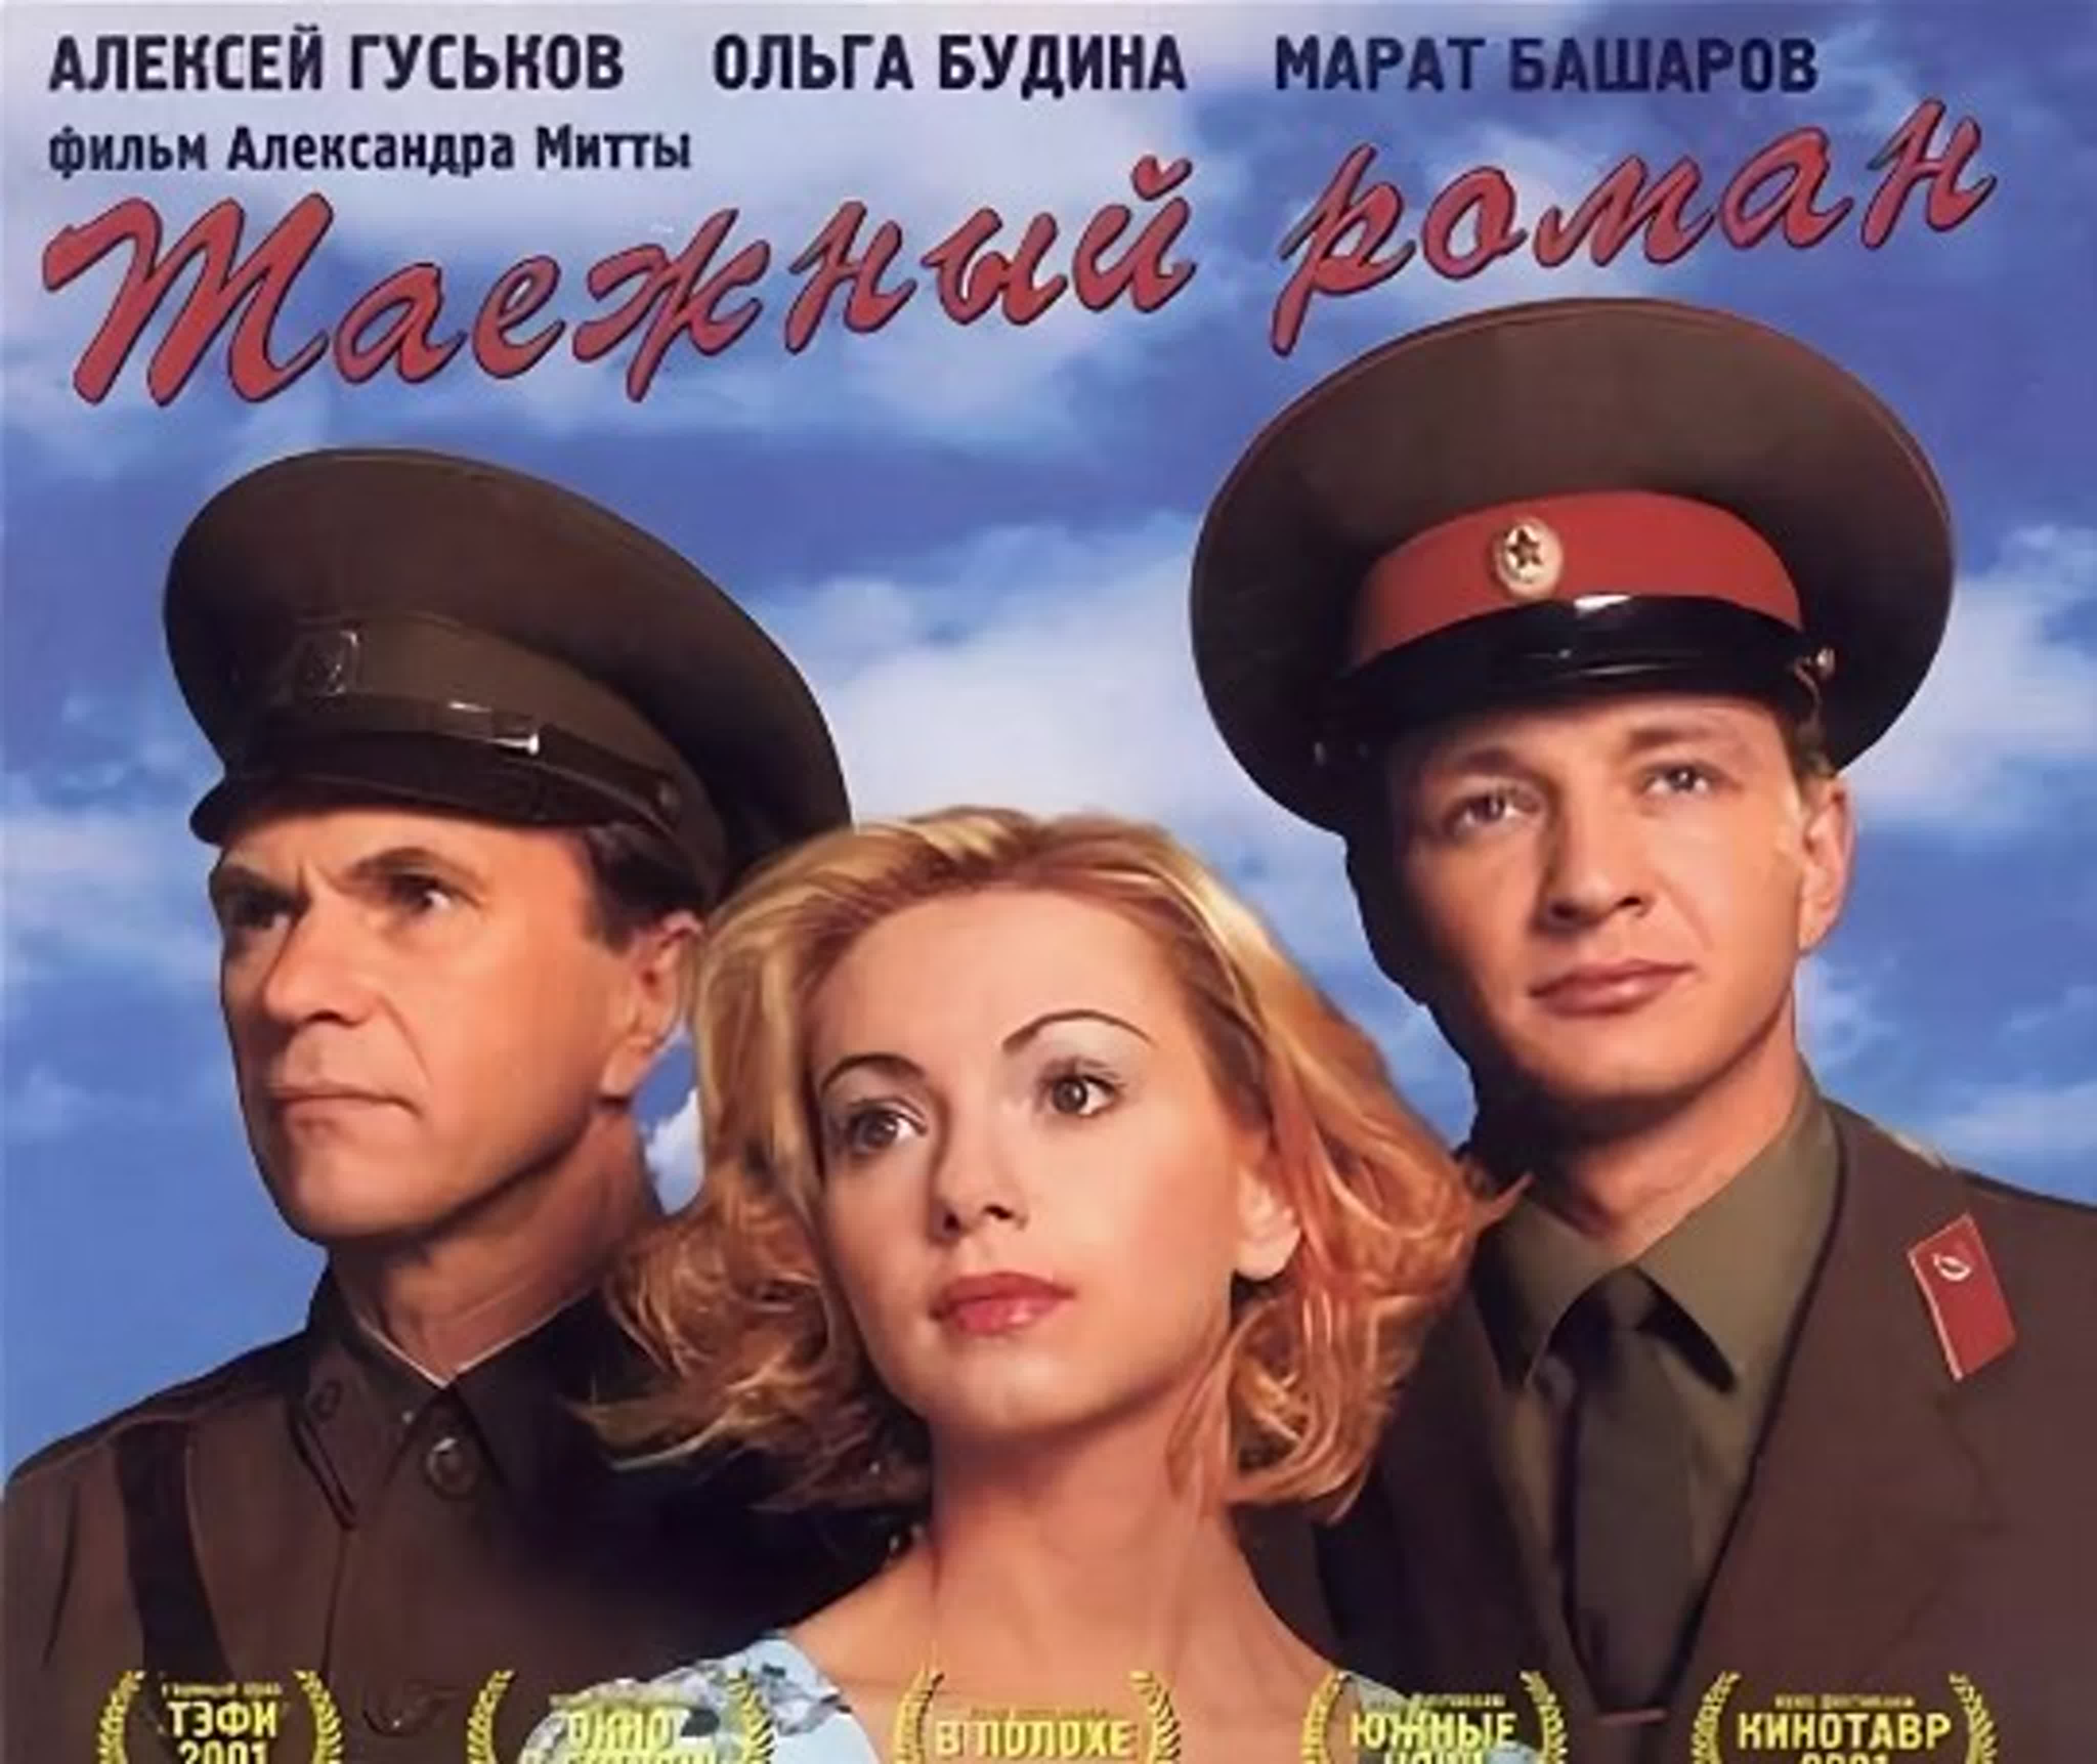 Граница: Таежный роман/Россия/2000 /драма, мелодрама